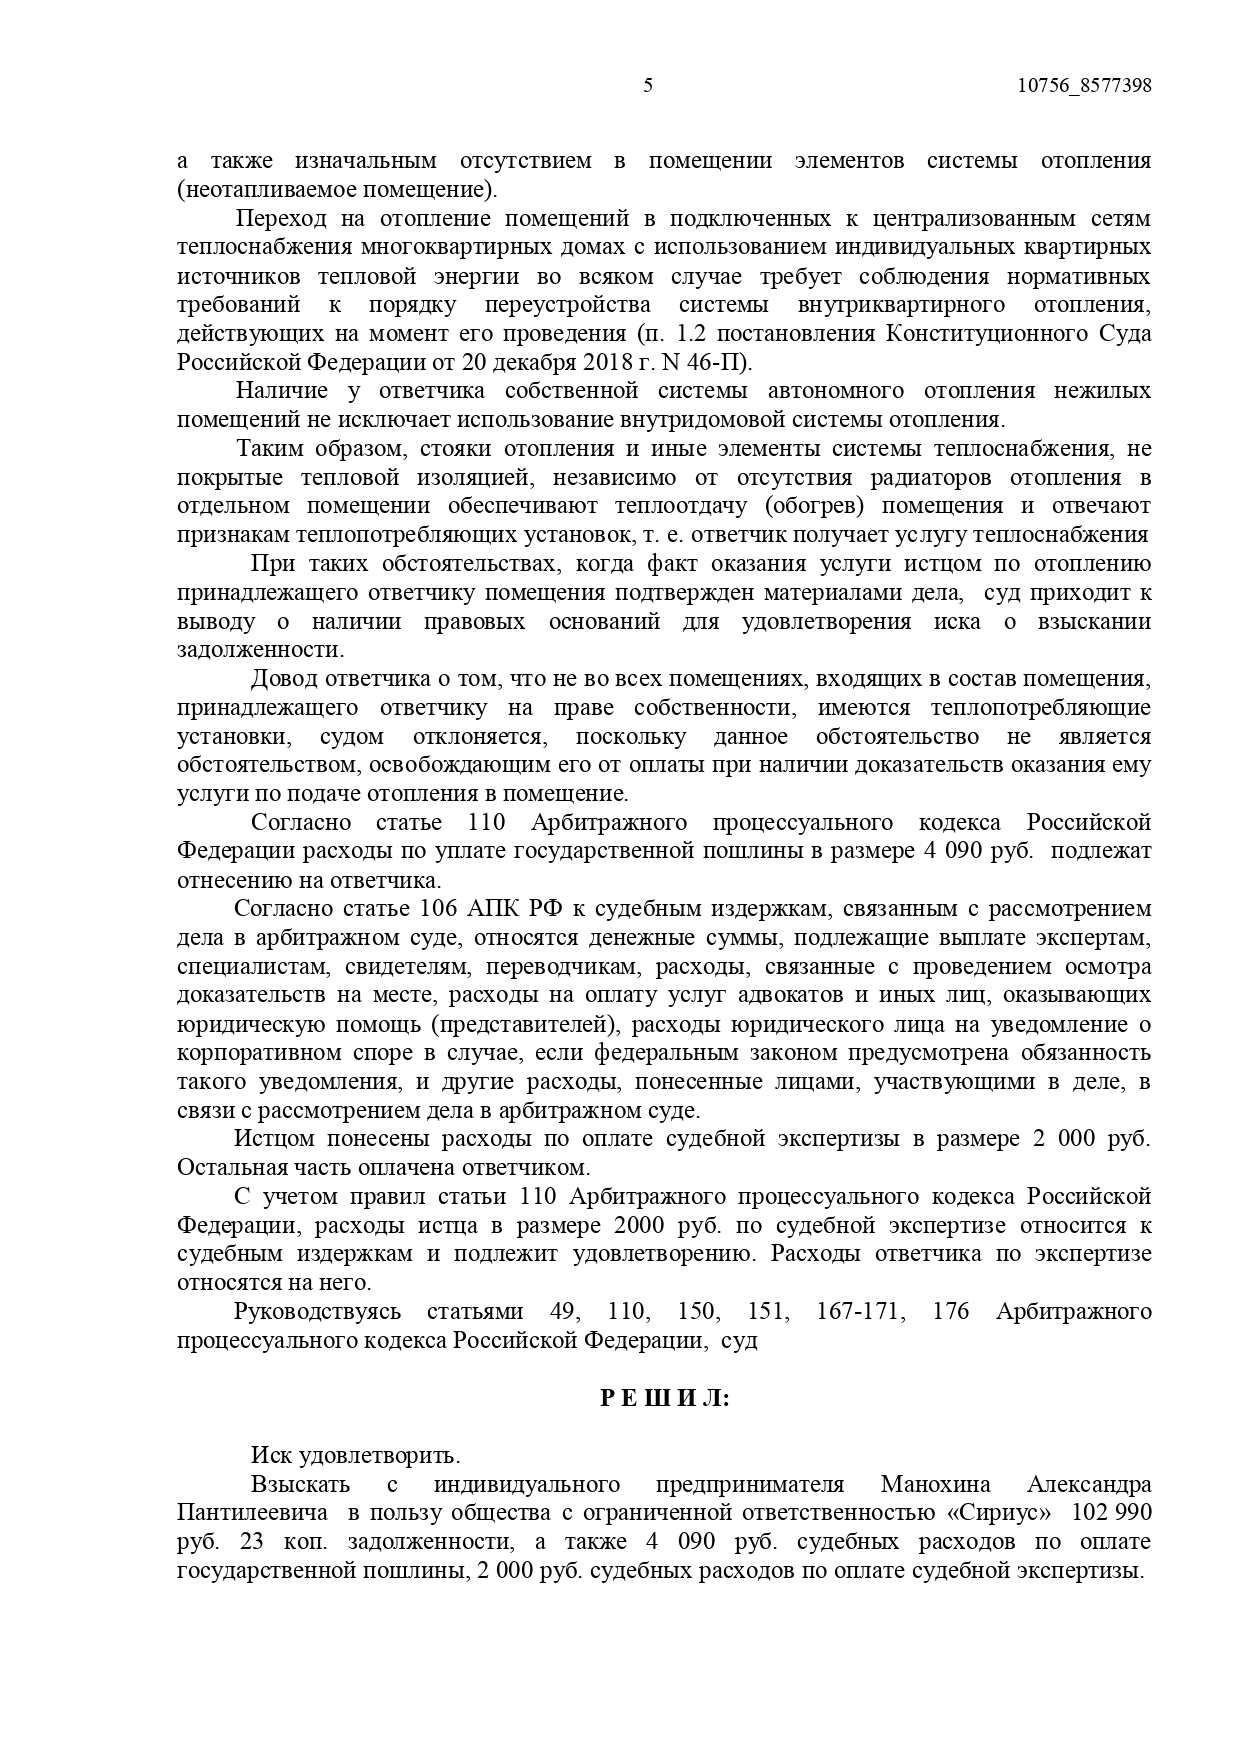 Арбитражный суд Ростовской области вынес решение по делу №А53-3666/2021